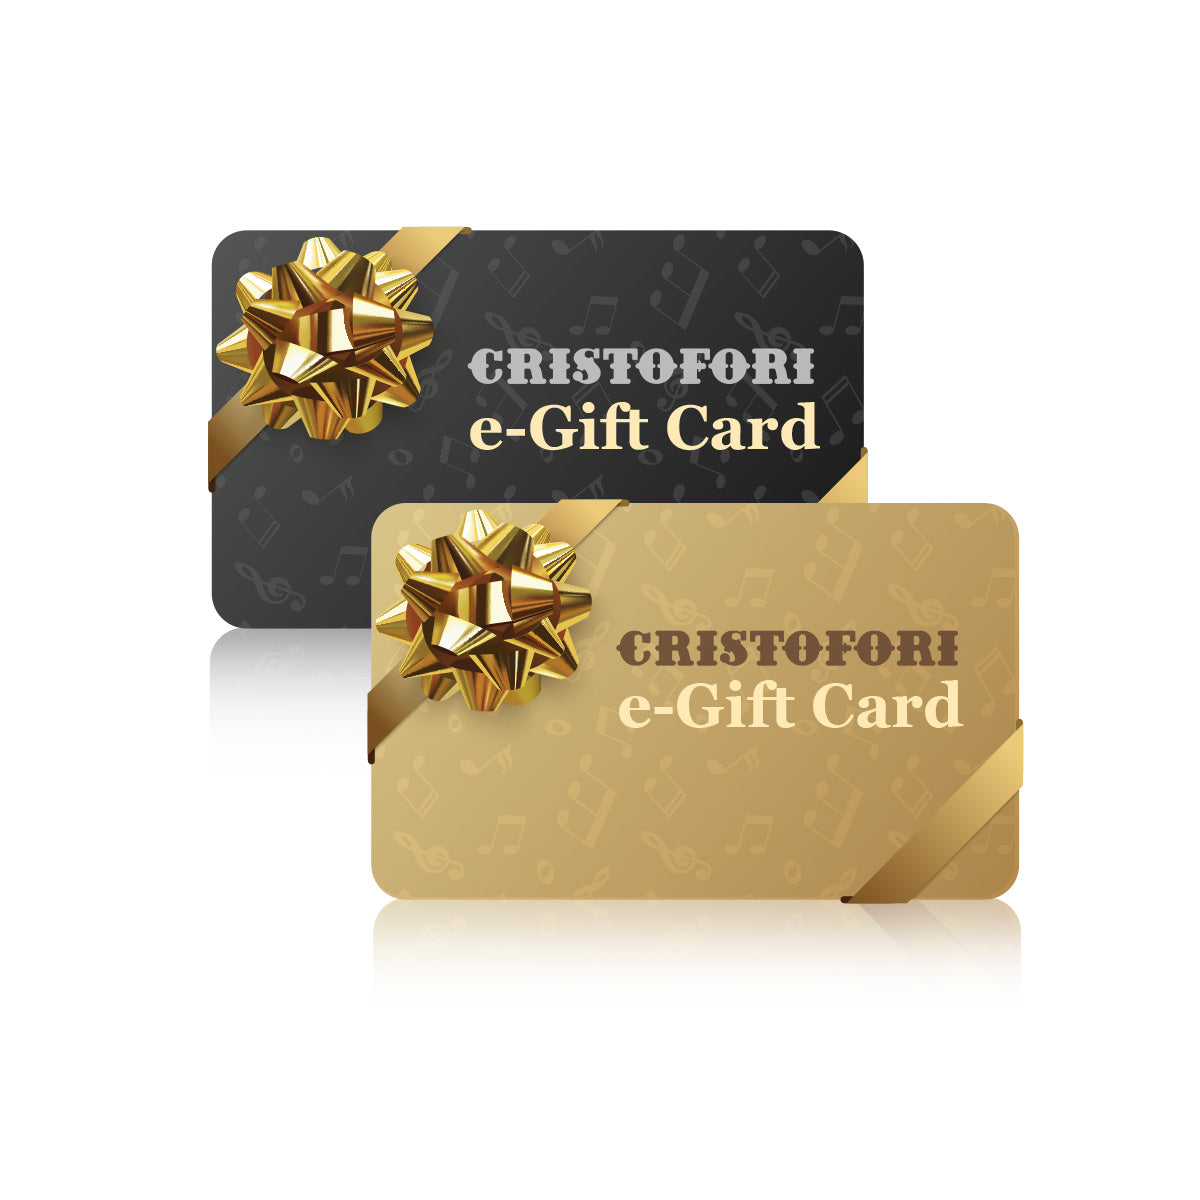 CRISTOFORI E-Gift Cards